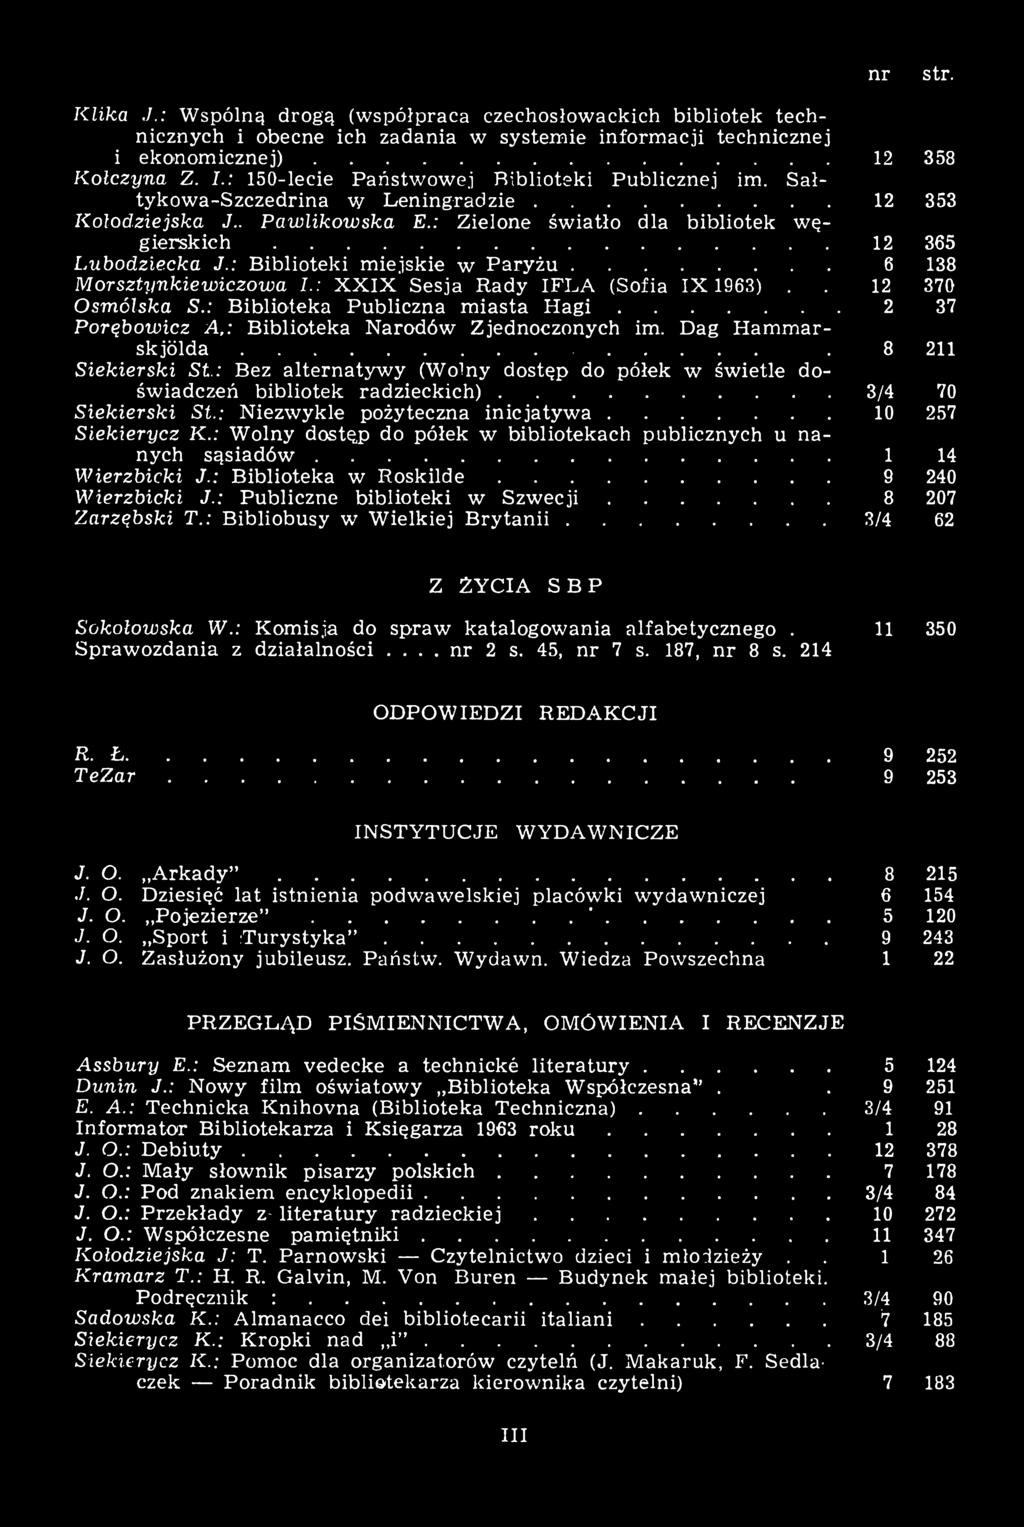 : Biblioteki miejskie w Paryżu... 6 138 Morsztynkiewieżowa I.: XXIX Sesja Rady IFLA (Sofia 1X 1963).. 12 370 Osmólska S.: Biblioteka Publiczna miasta Hagi.